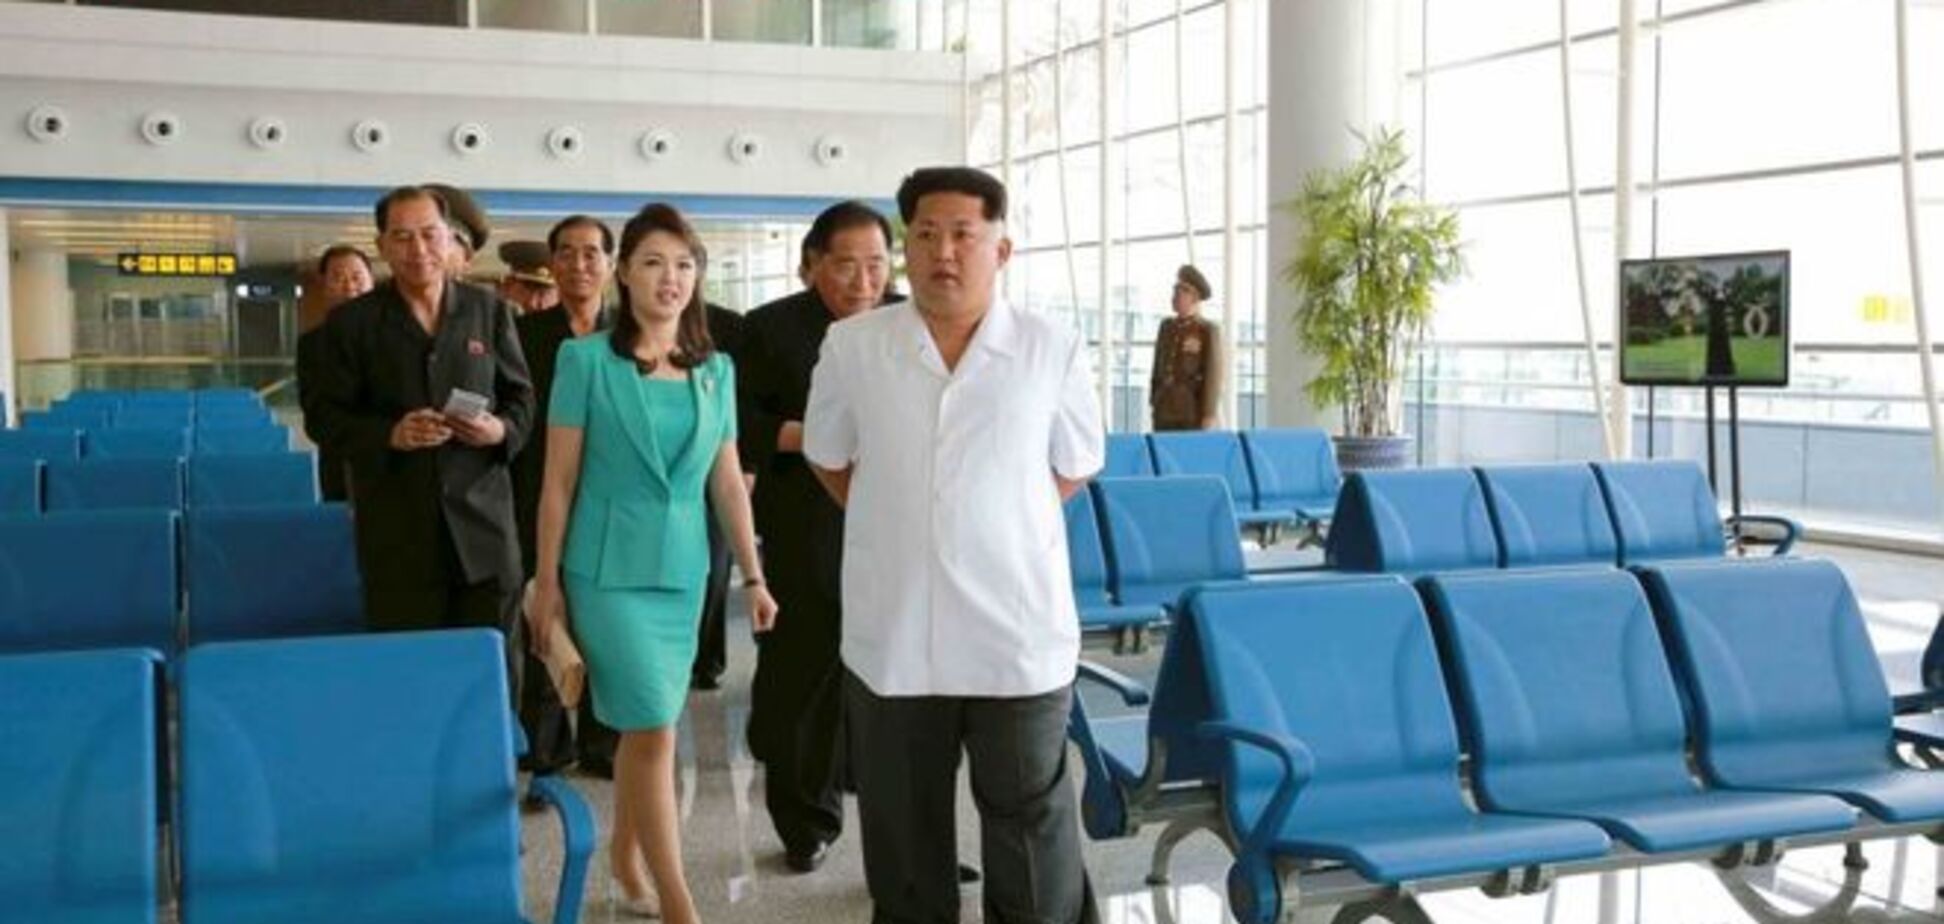 Не смог передать идею партии. Ким Чен Ын казнил архитектора аэропорта - СМИ